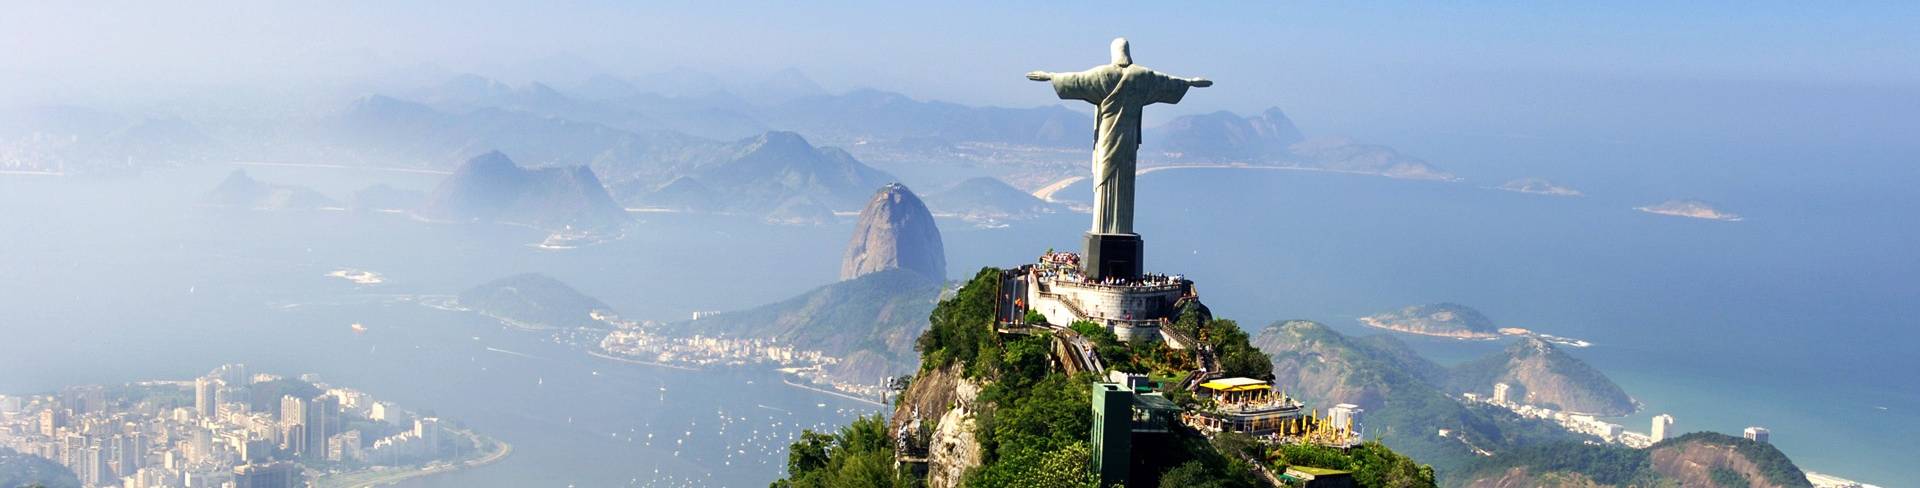 Рио де Жанейро - столица Бразилии